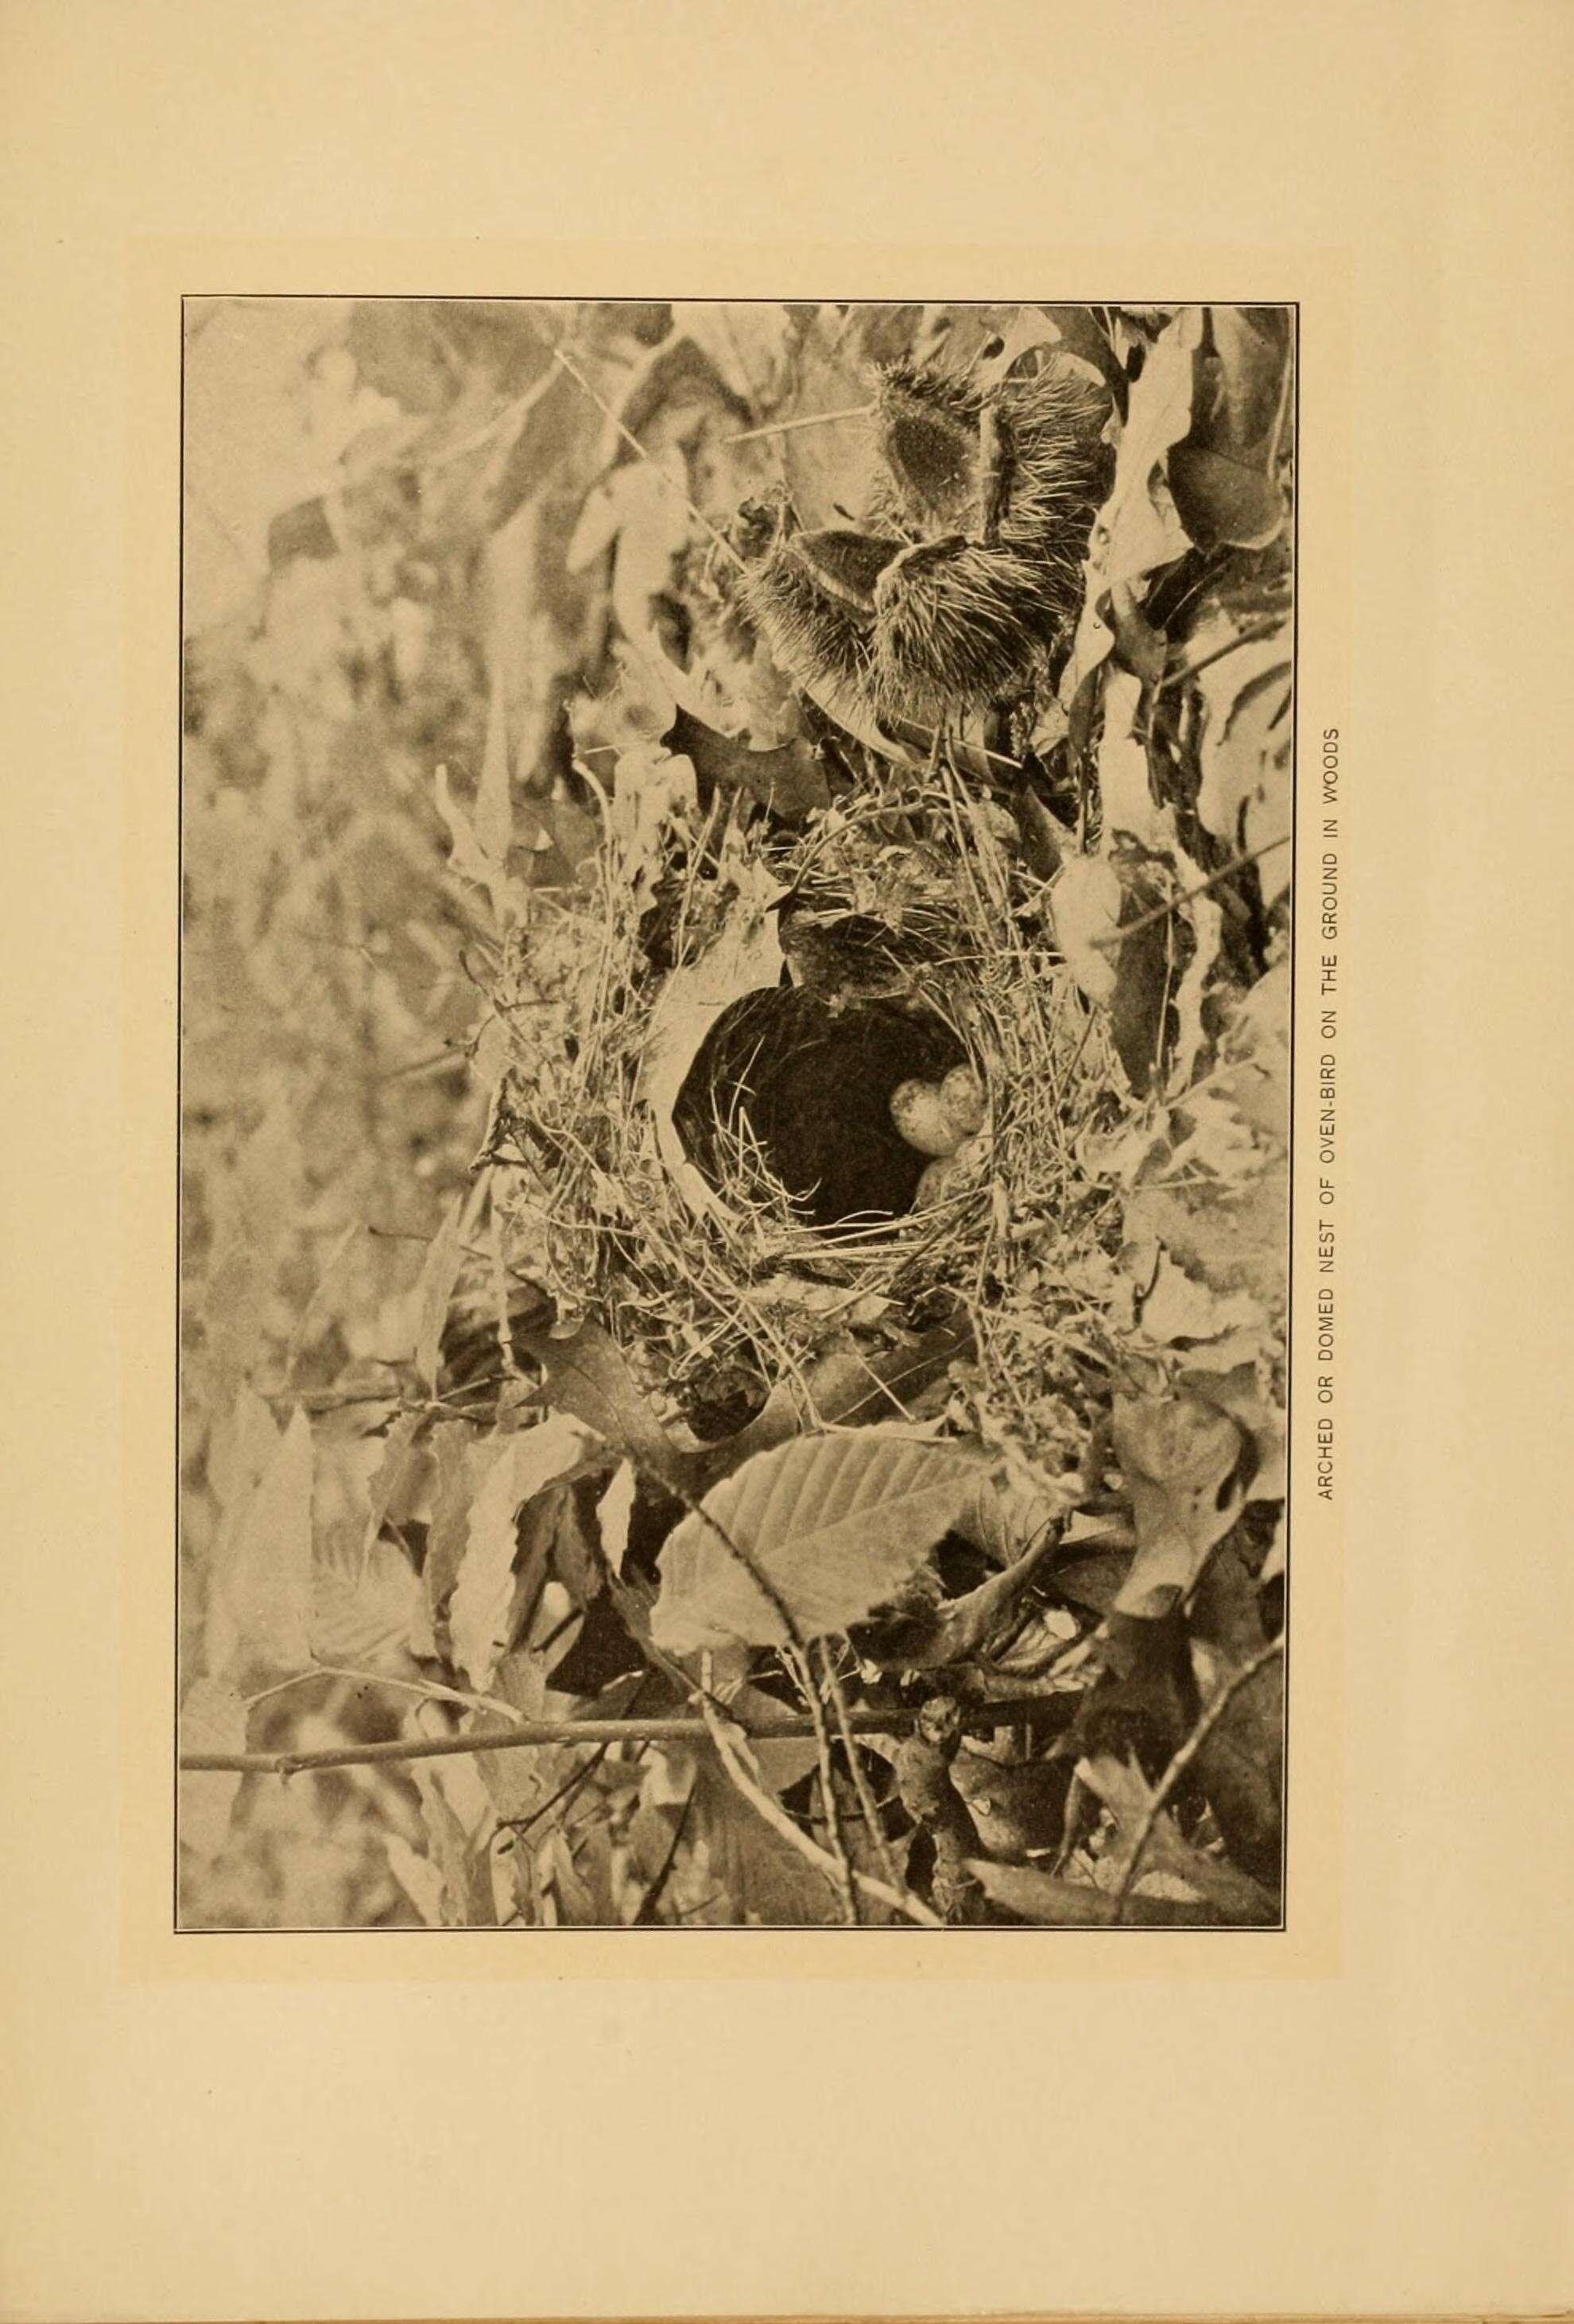 Sivun Seiurus Swainson 1827 kuva